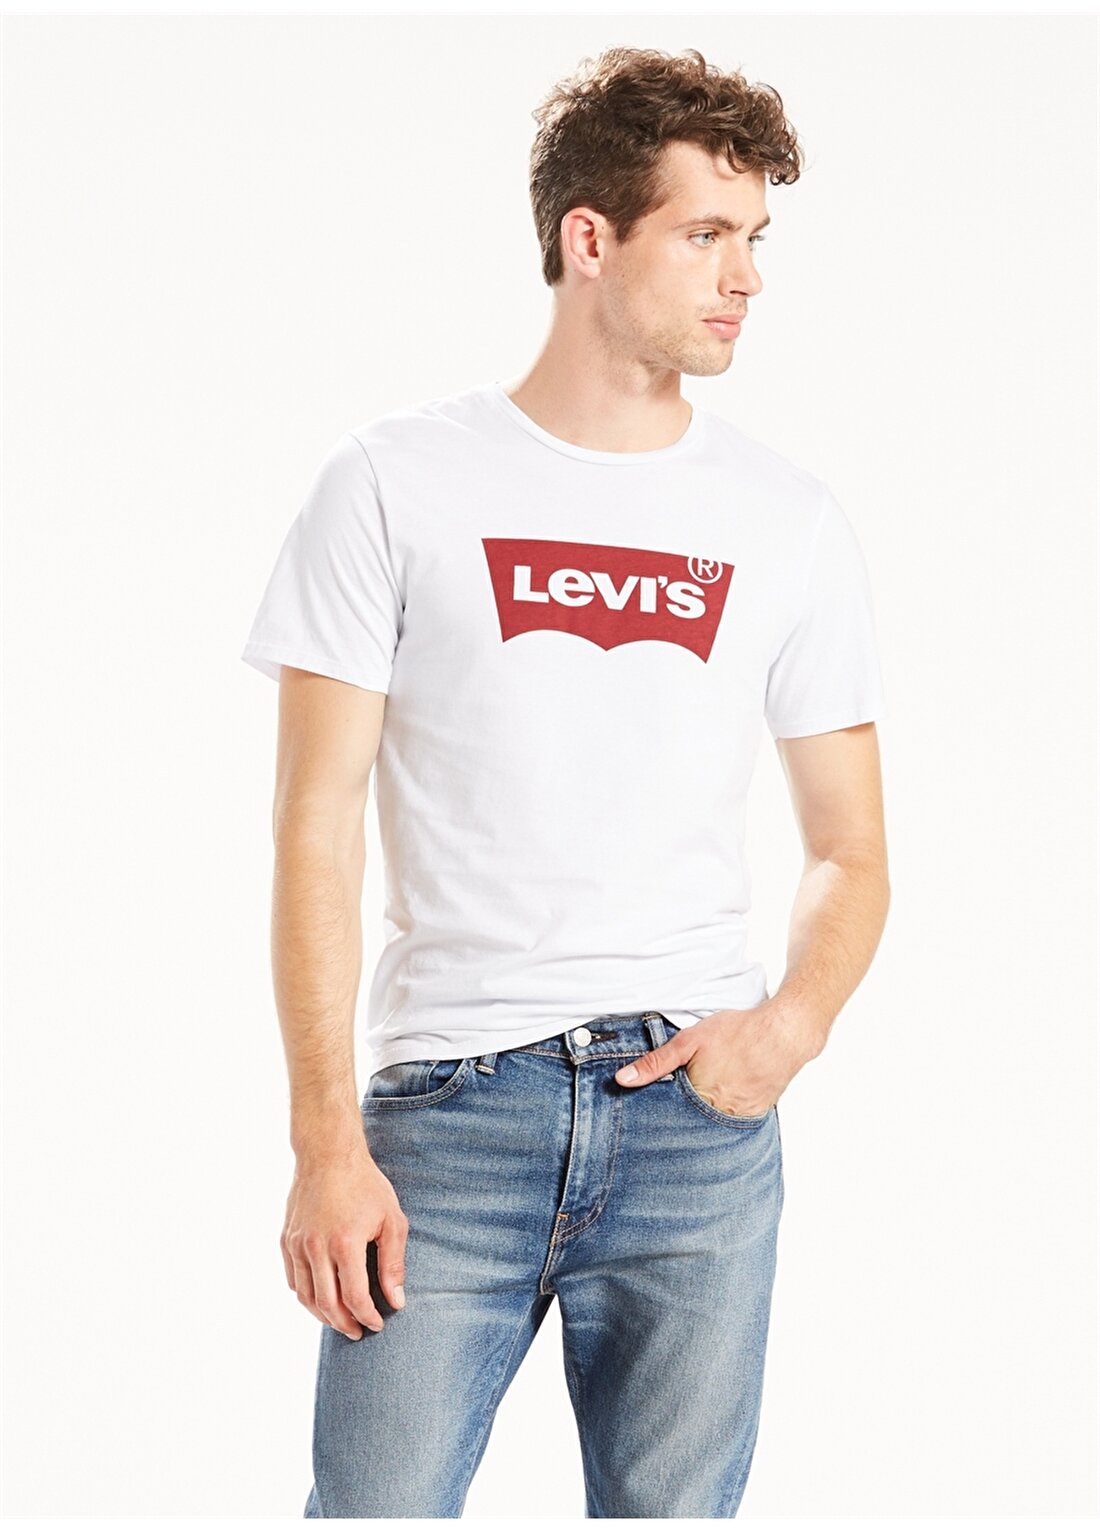 Levis 17783-0140 Graphic Setin Neck Hm T-Shirt